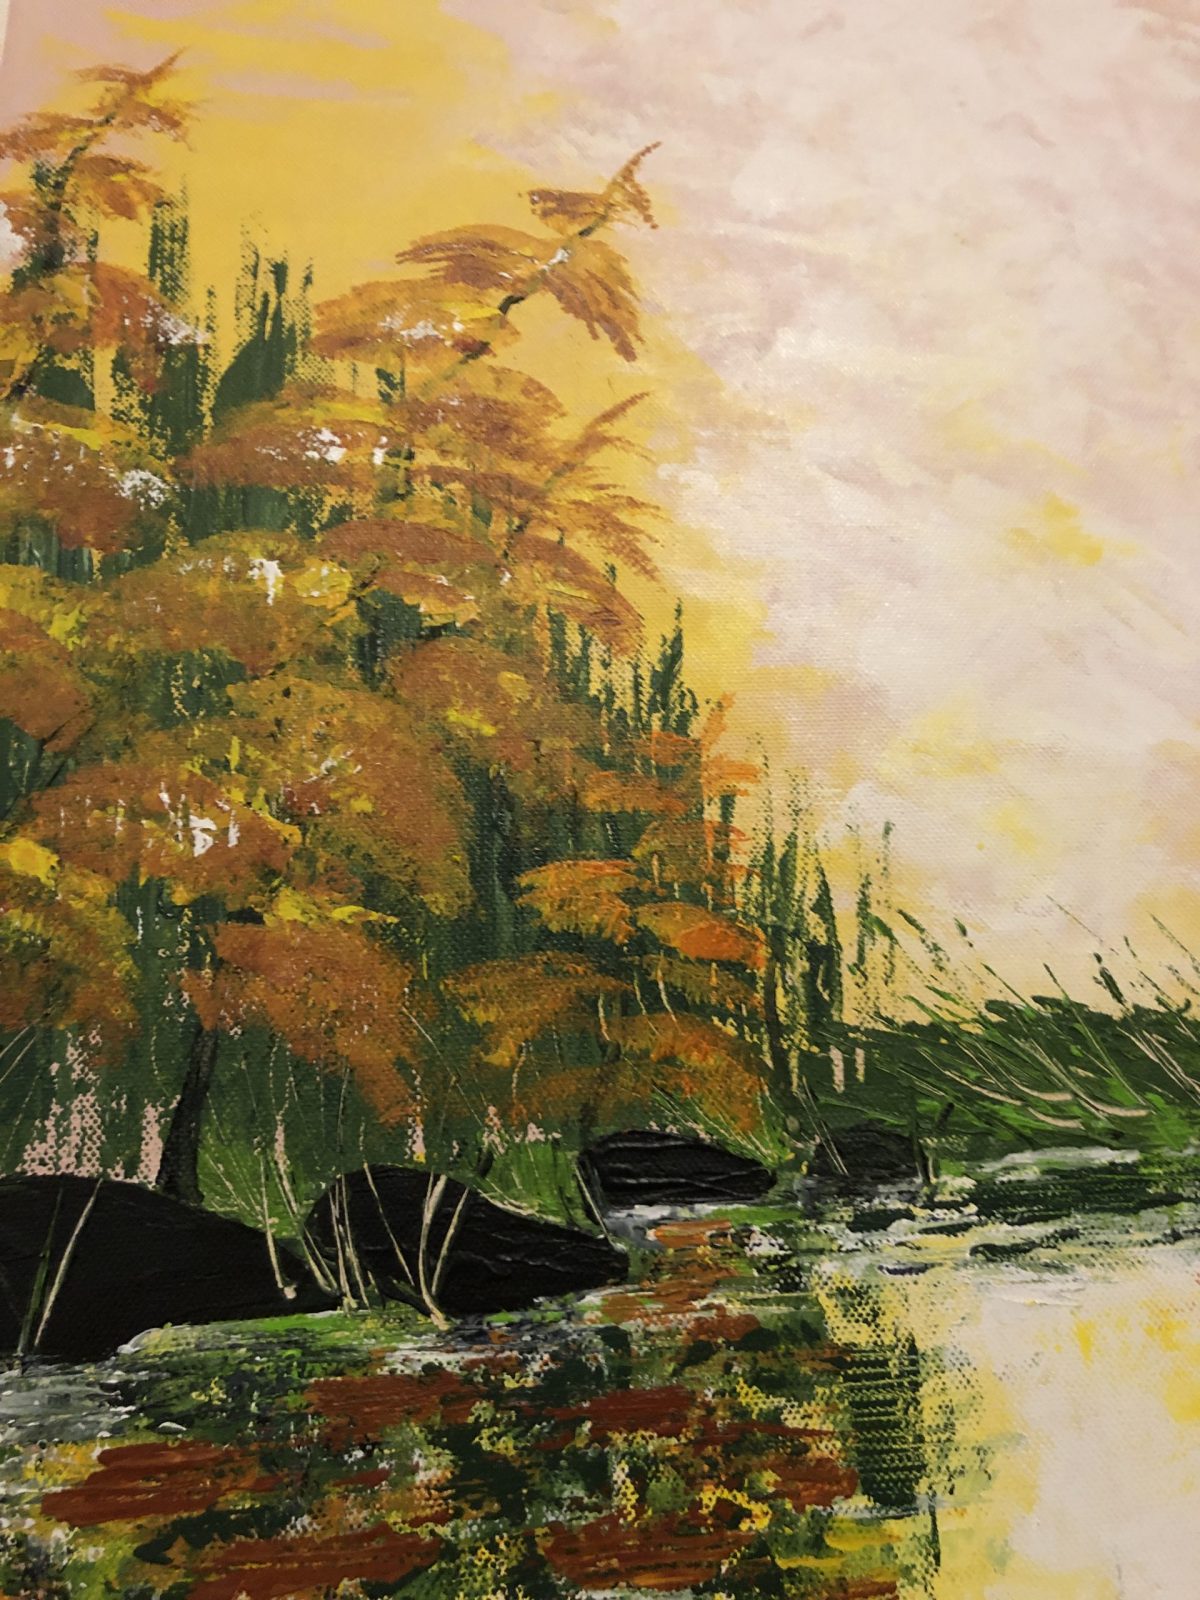 L'automne doré au lac de Kate_Art, gros plan côté gauche du tableau